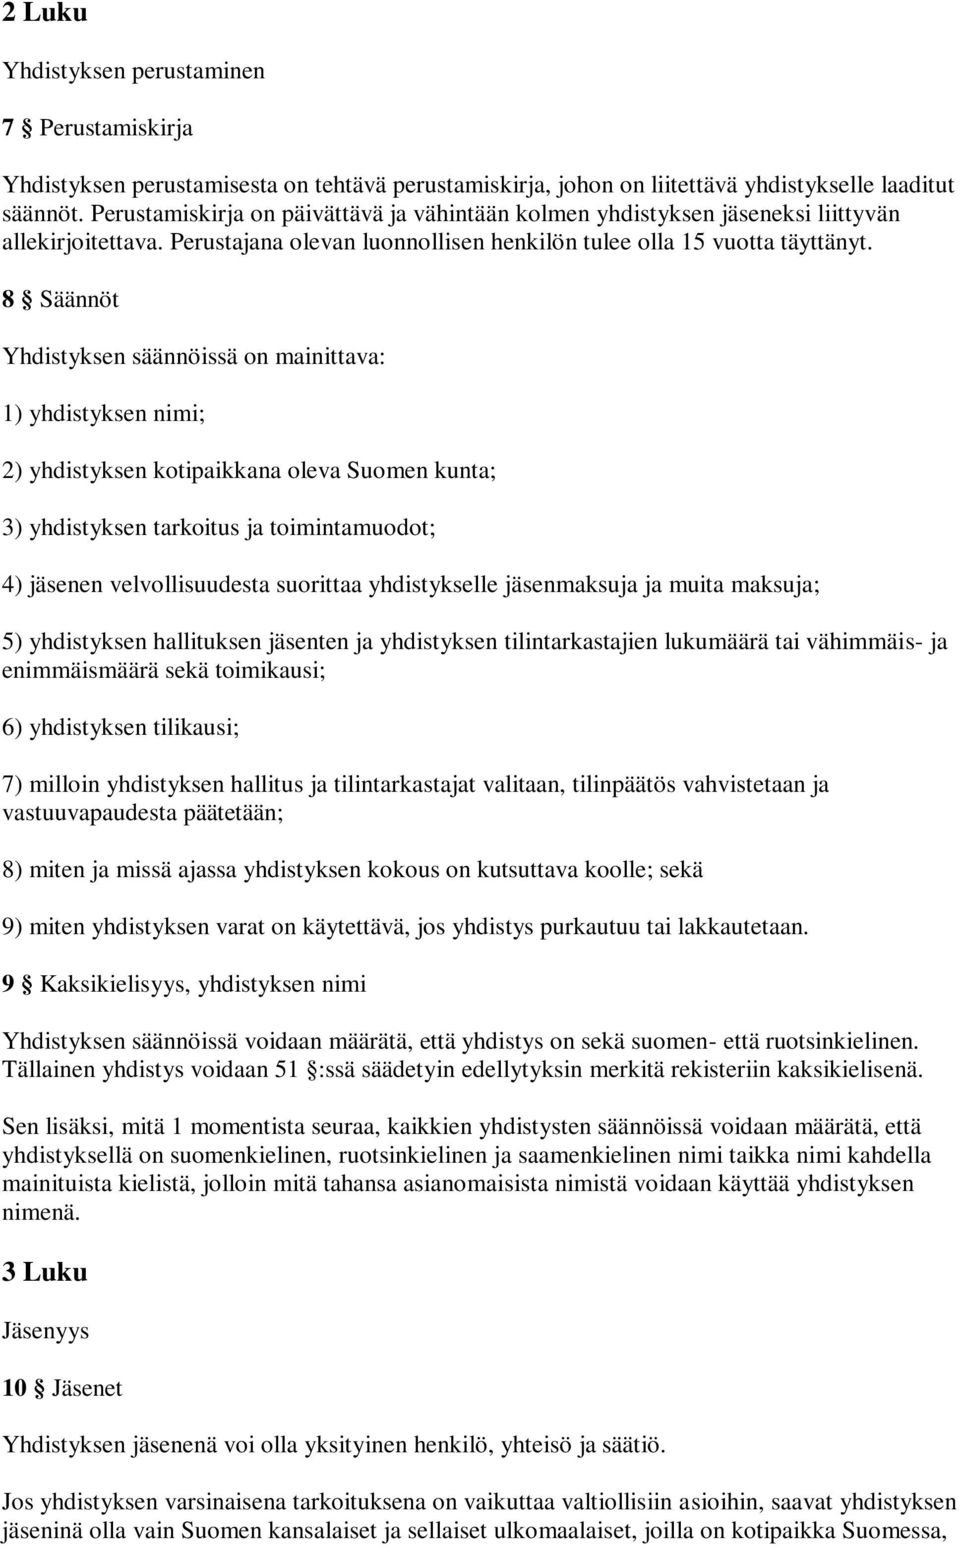 8 Säännöt Yhdistyksen säännöissä on mainittava: 1) yhdistyksen nimi; 2) yhdistyksen kotipaikkana oleva Suomen kunta; 3) yhdistyksen tarkoitus ja toimintamuodot; 4) jäsenen velvollisuudesta suorittaa